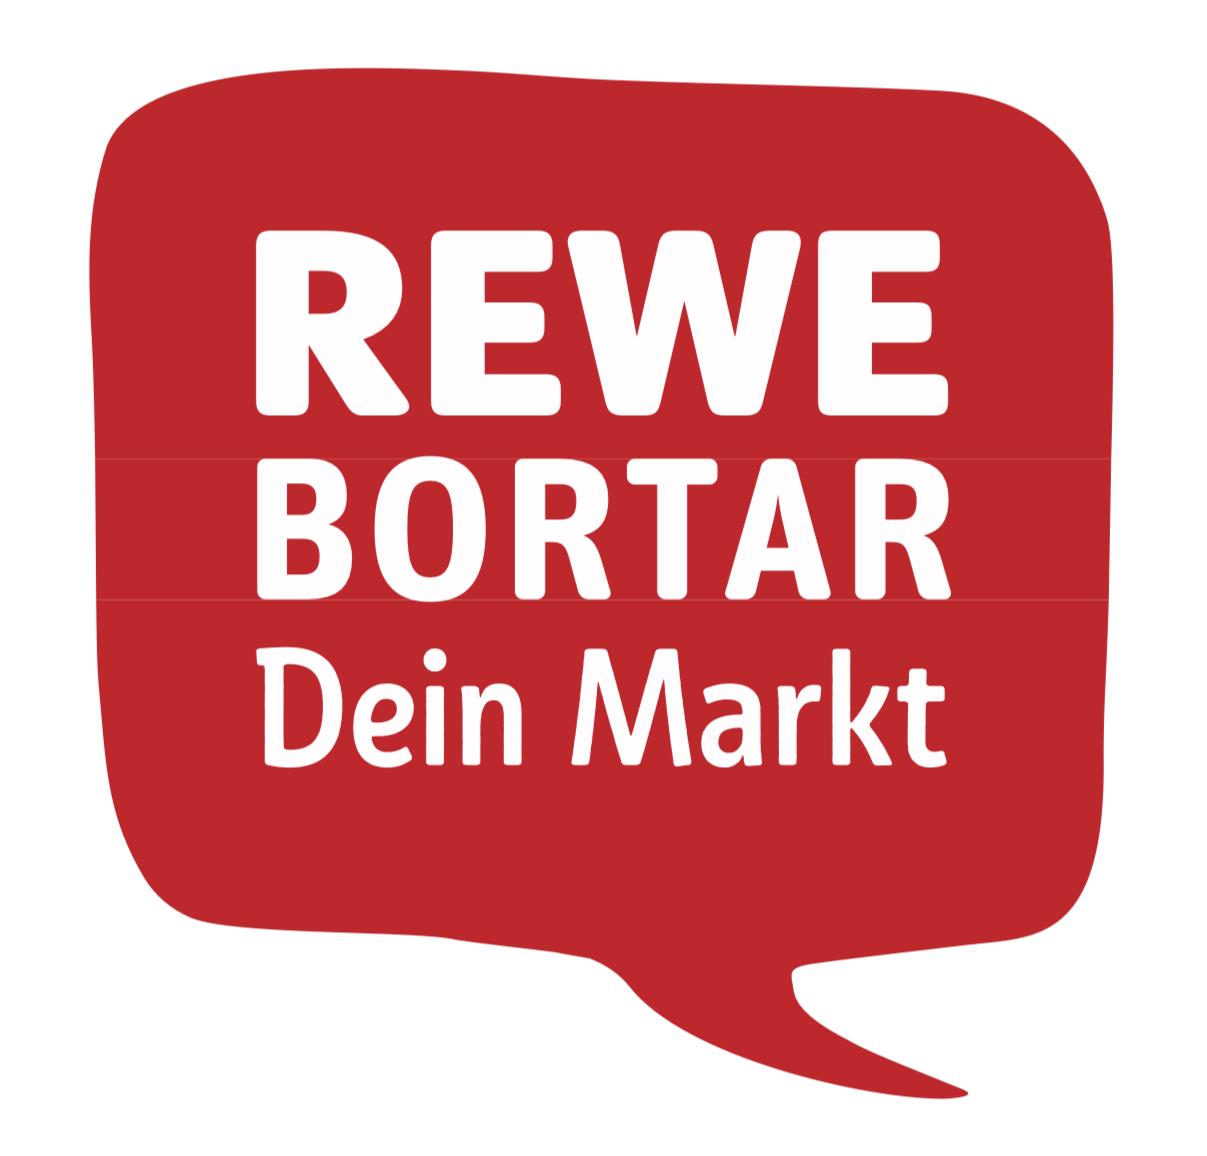 Rewe Bortar